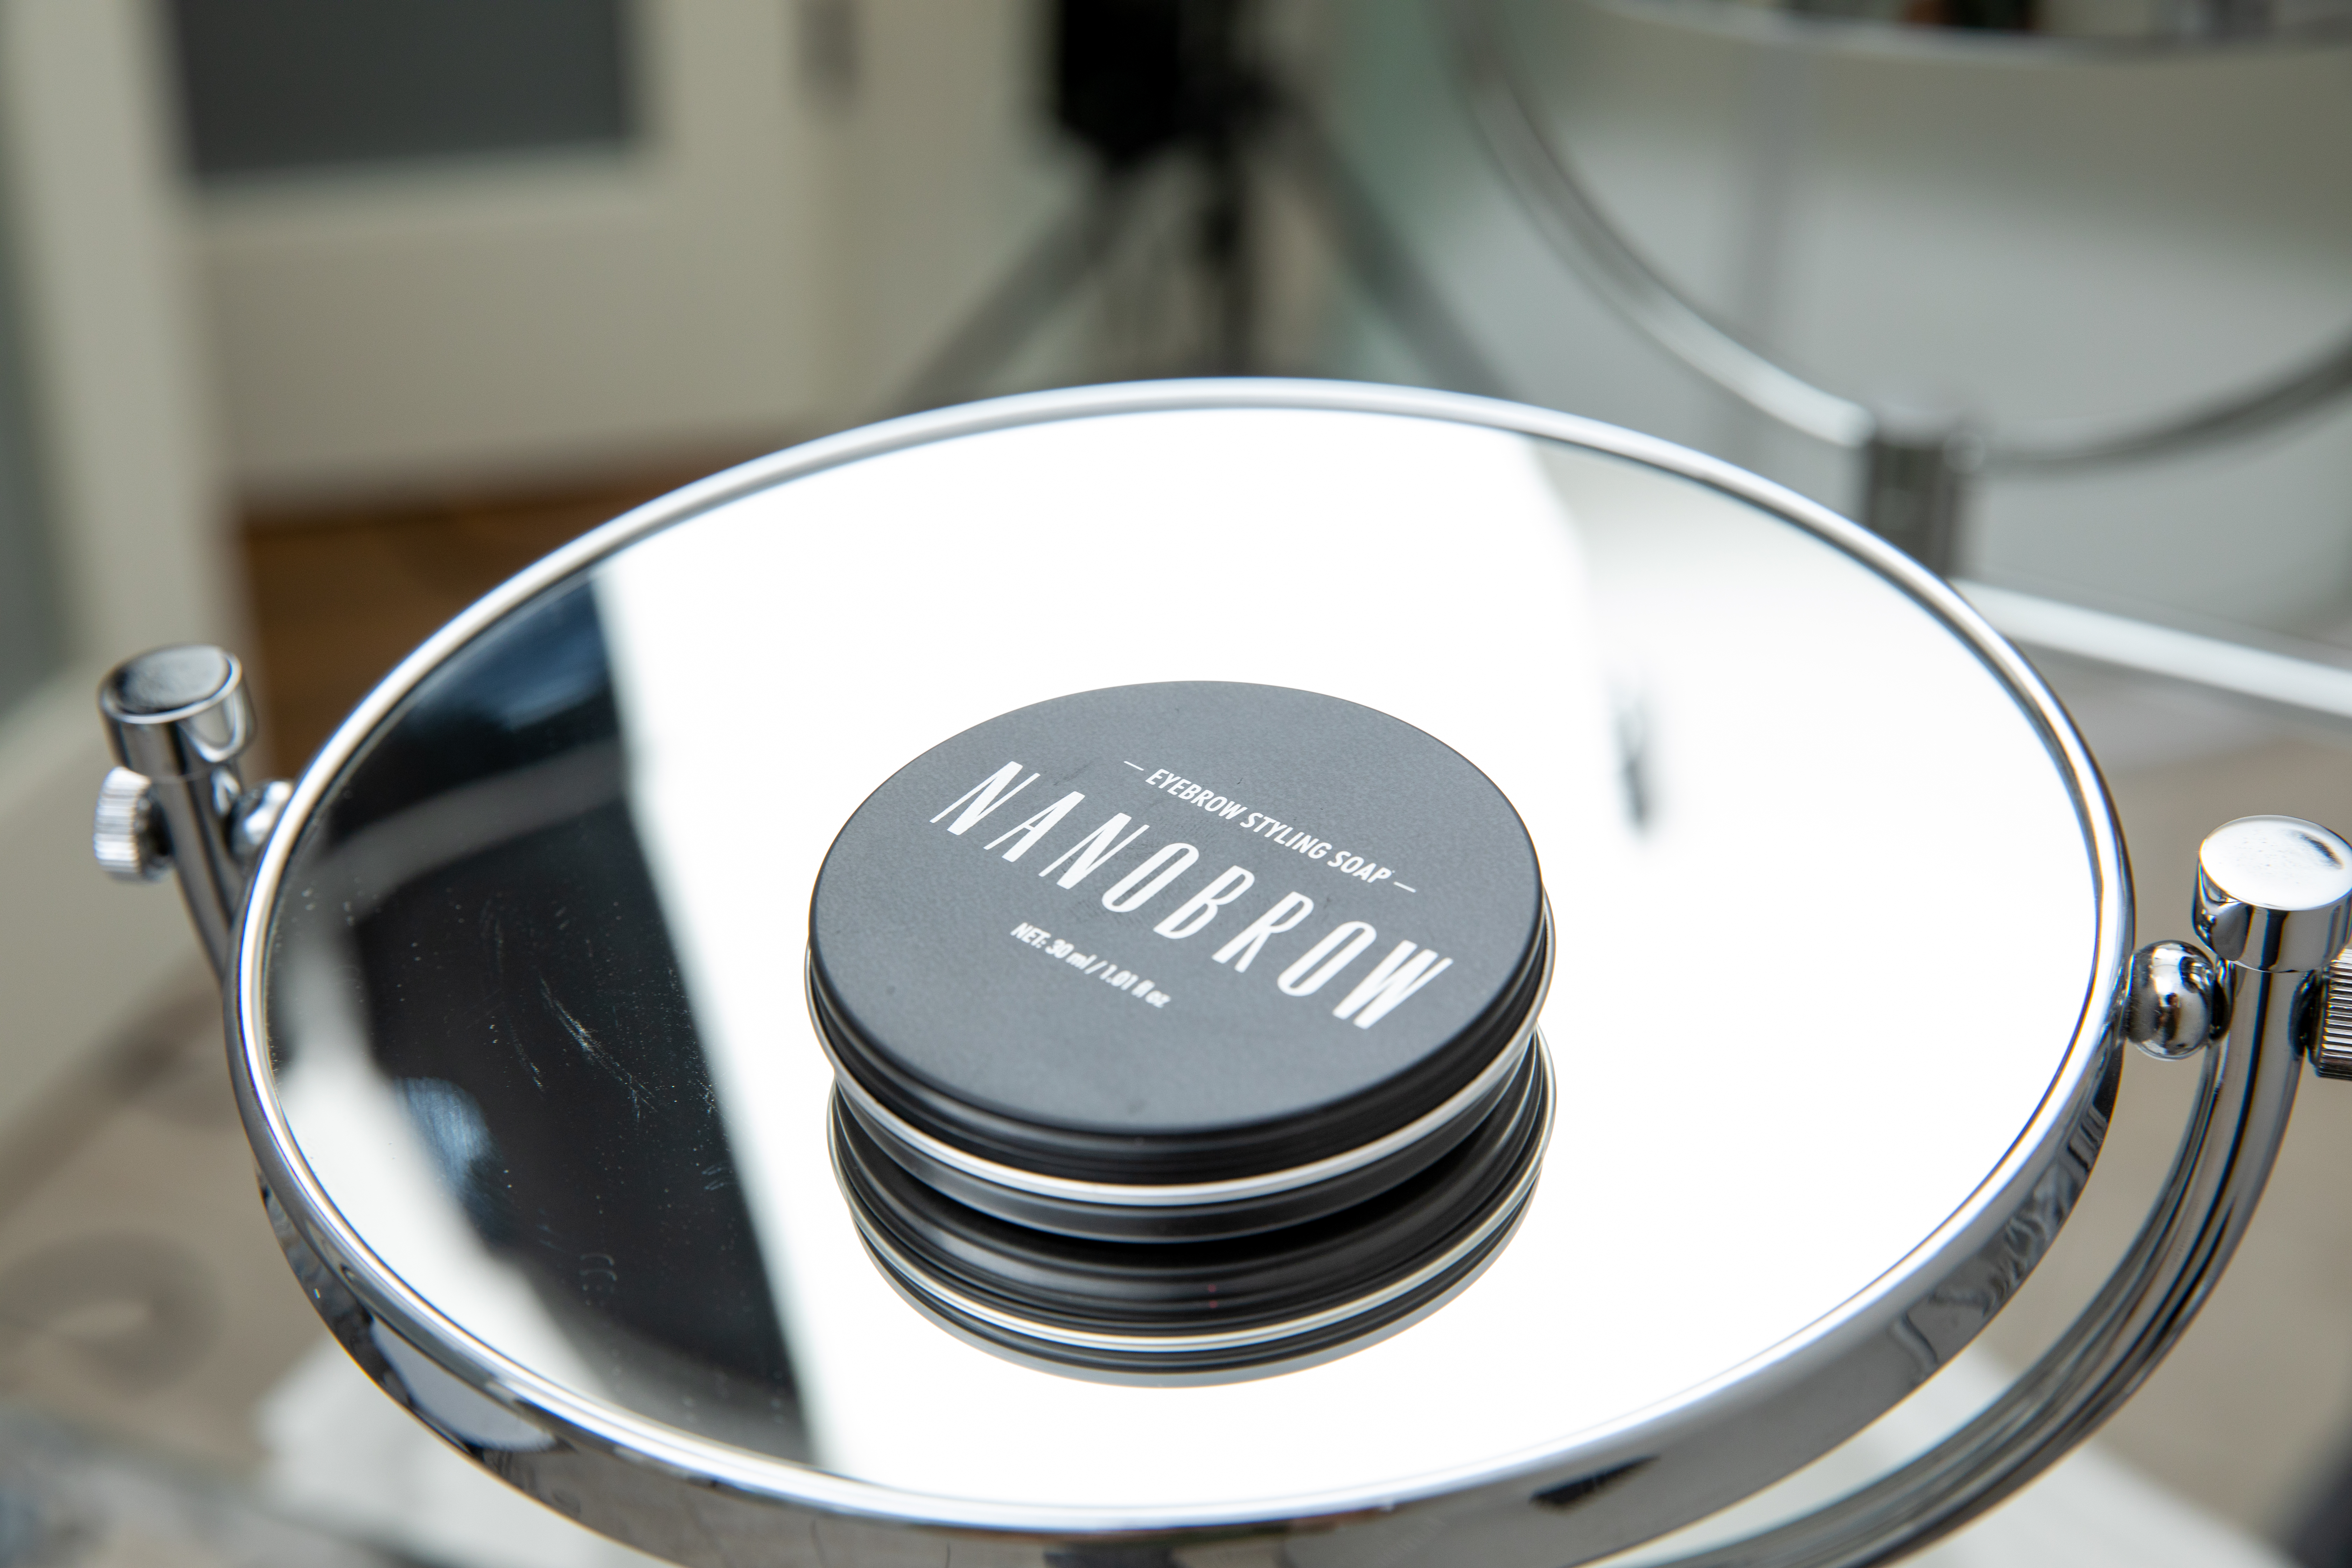 Cudowne mydło Nanobrow do układania brwi. Jak działa?